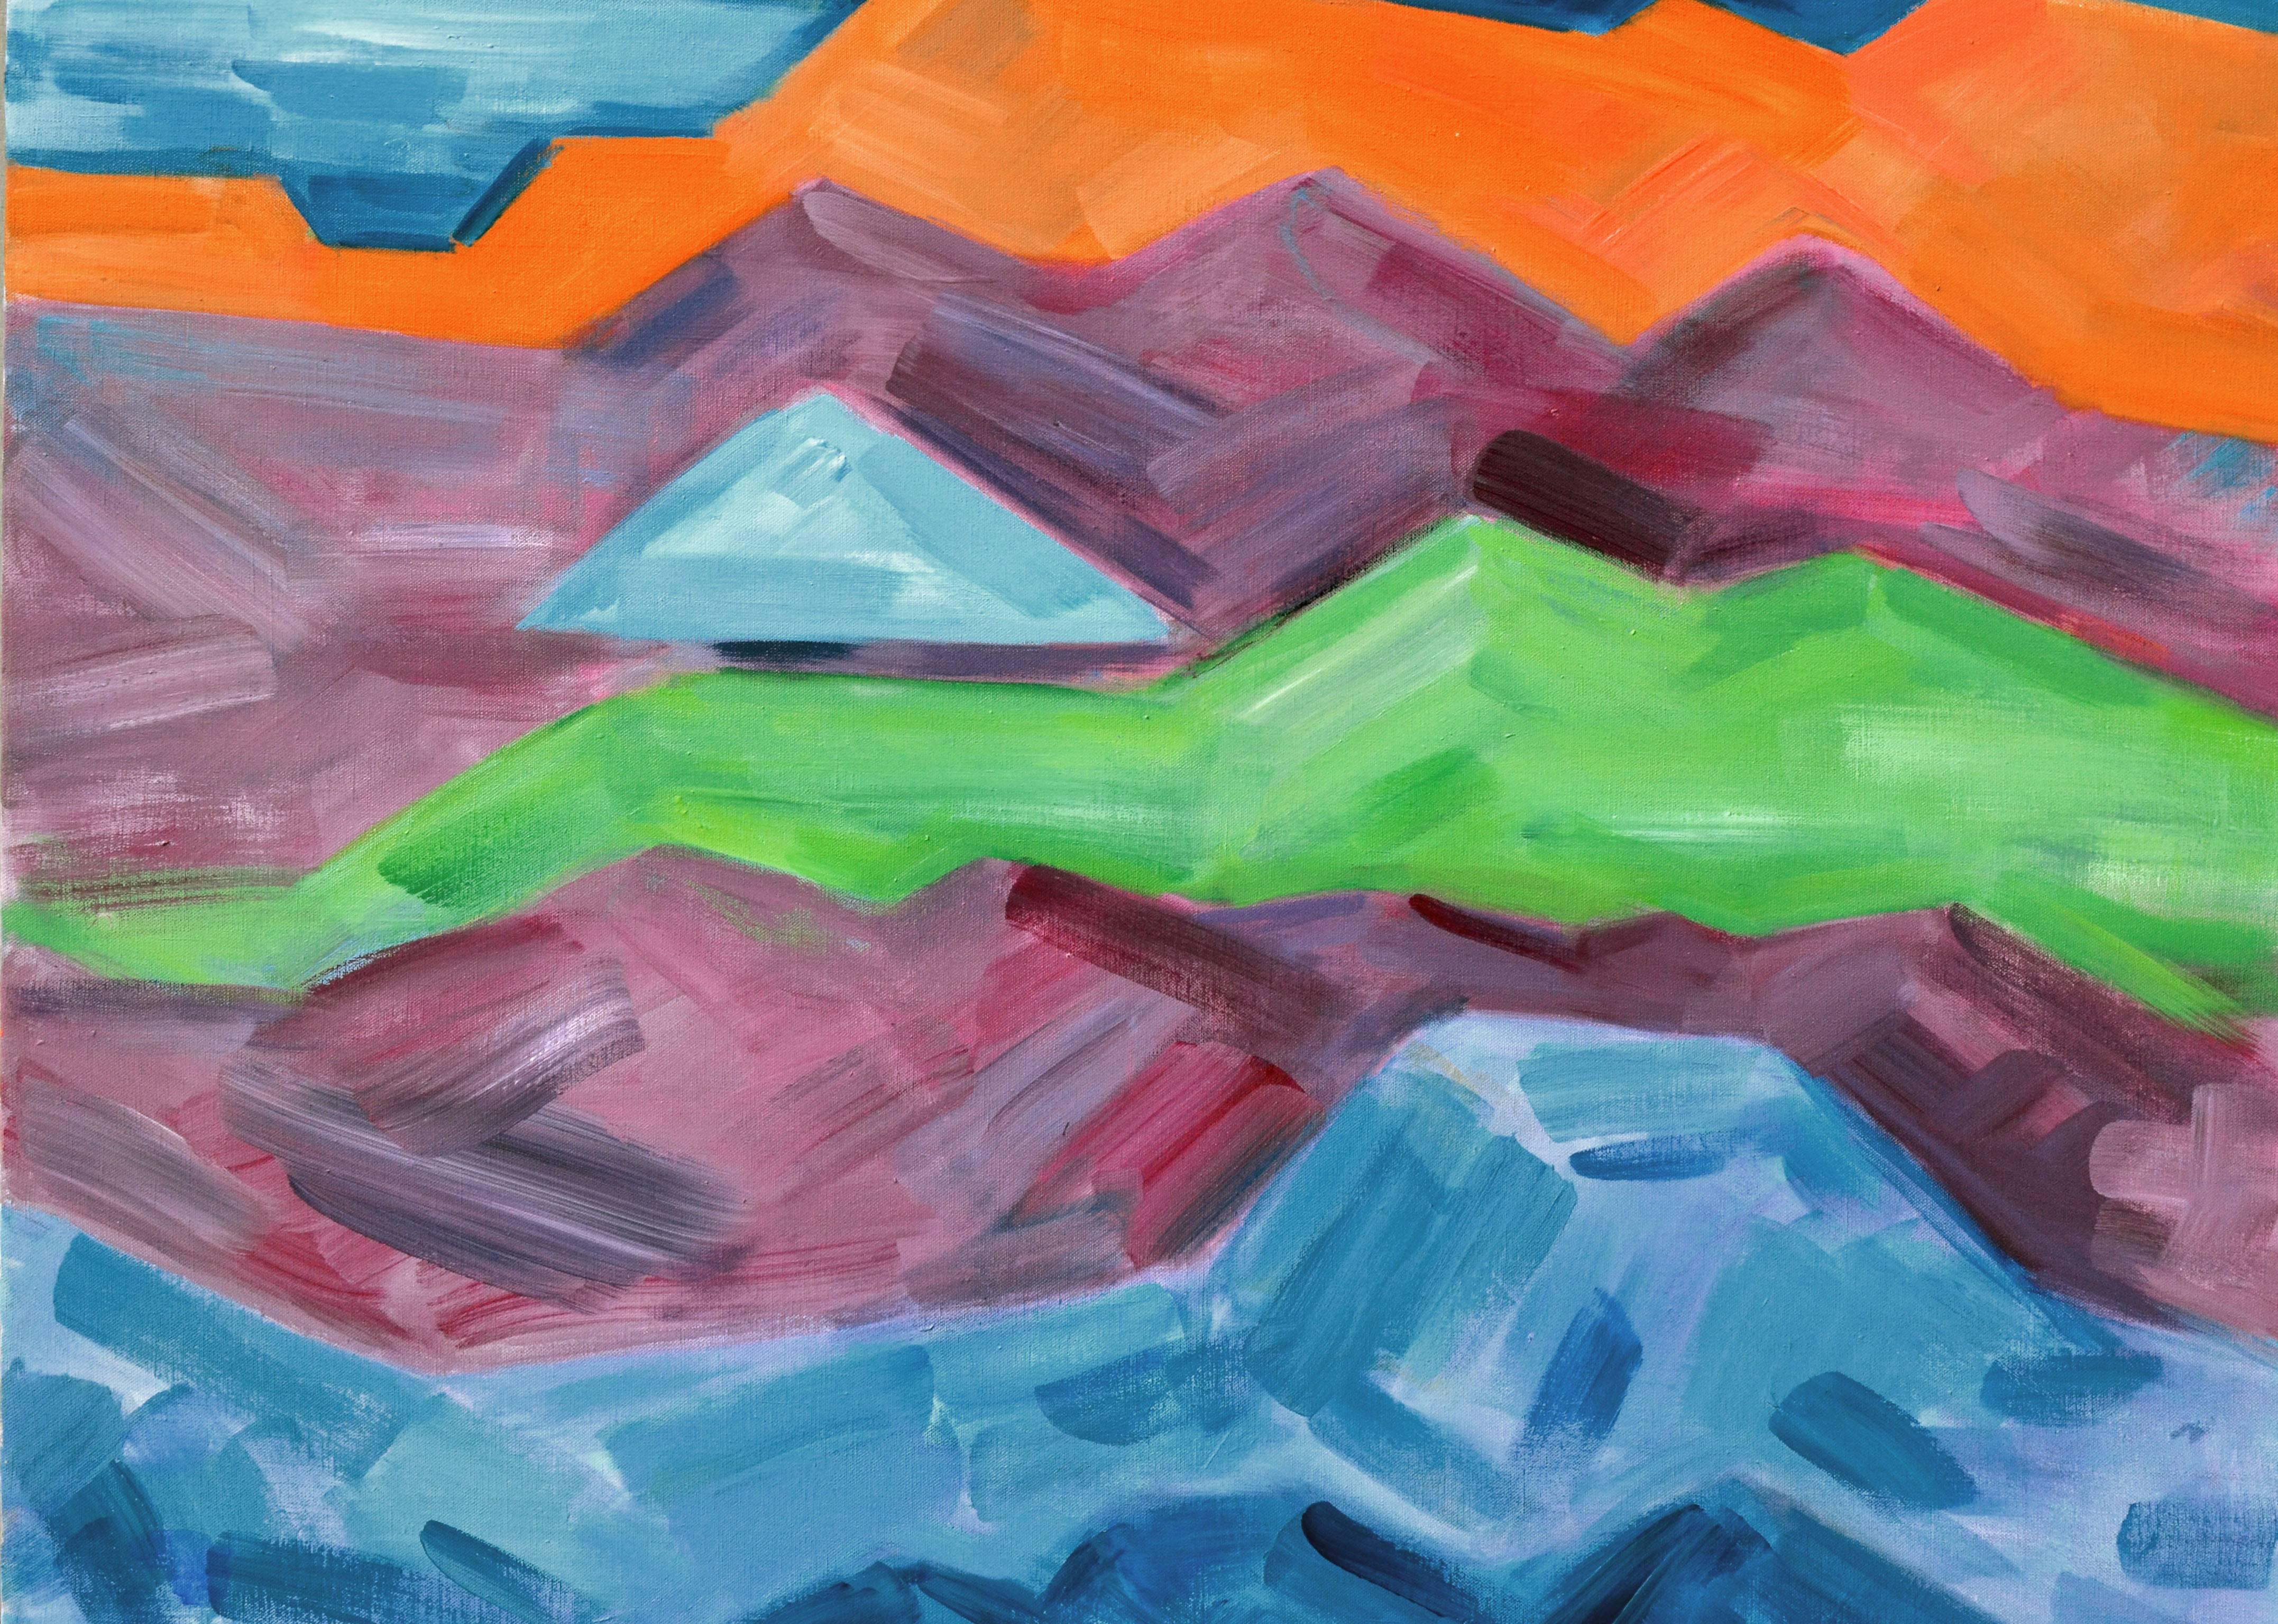 Großformatige mehrfarbige abstrakte Landschaft, Bay Area Mountains – Painting von Erle Loran